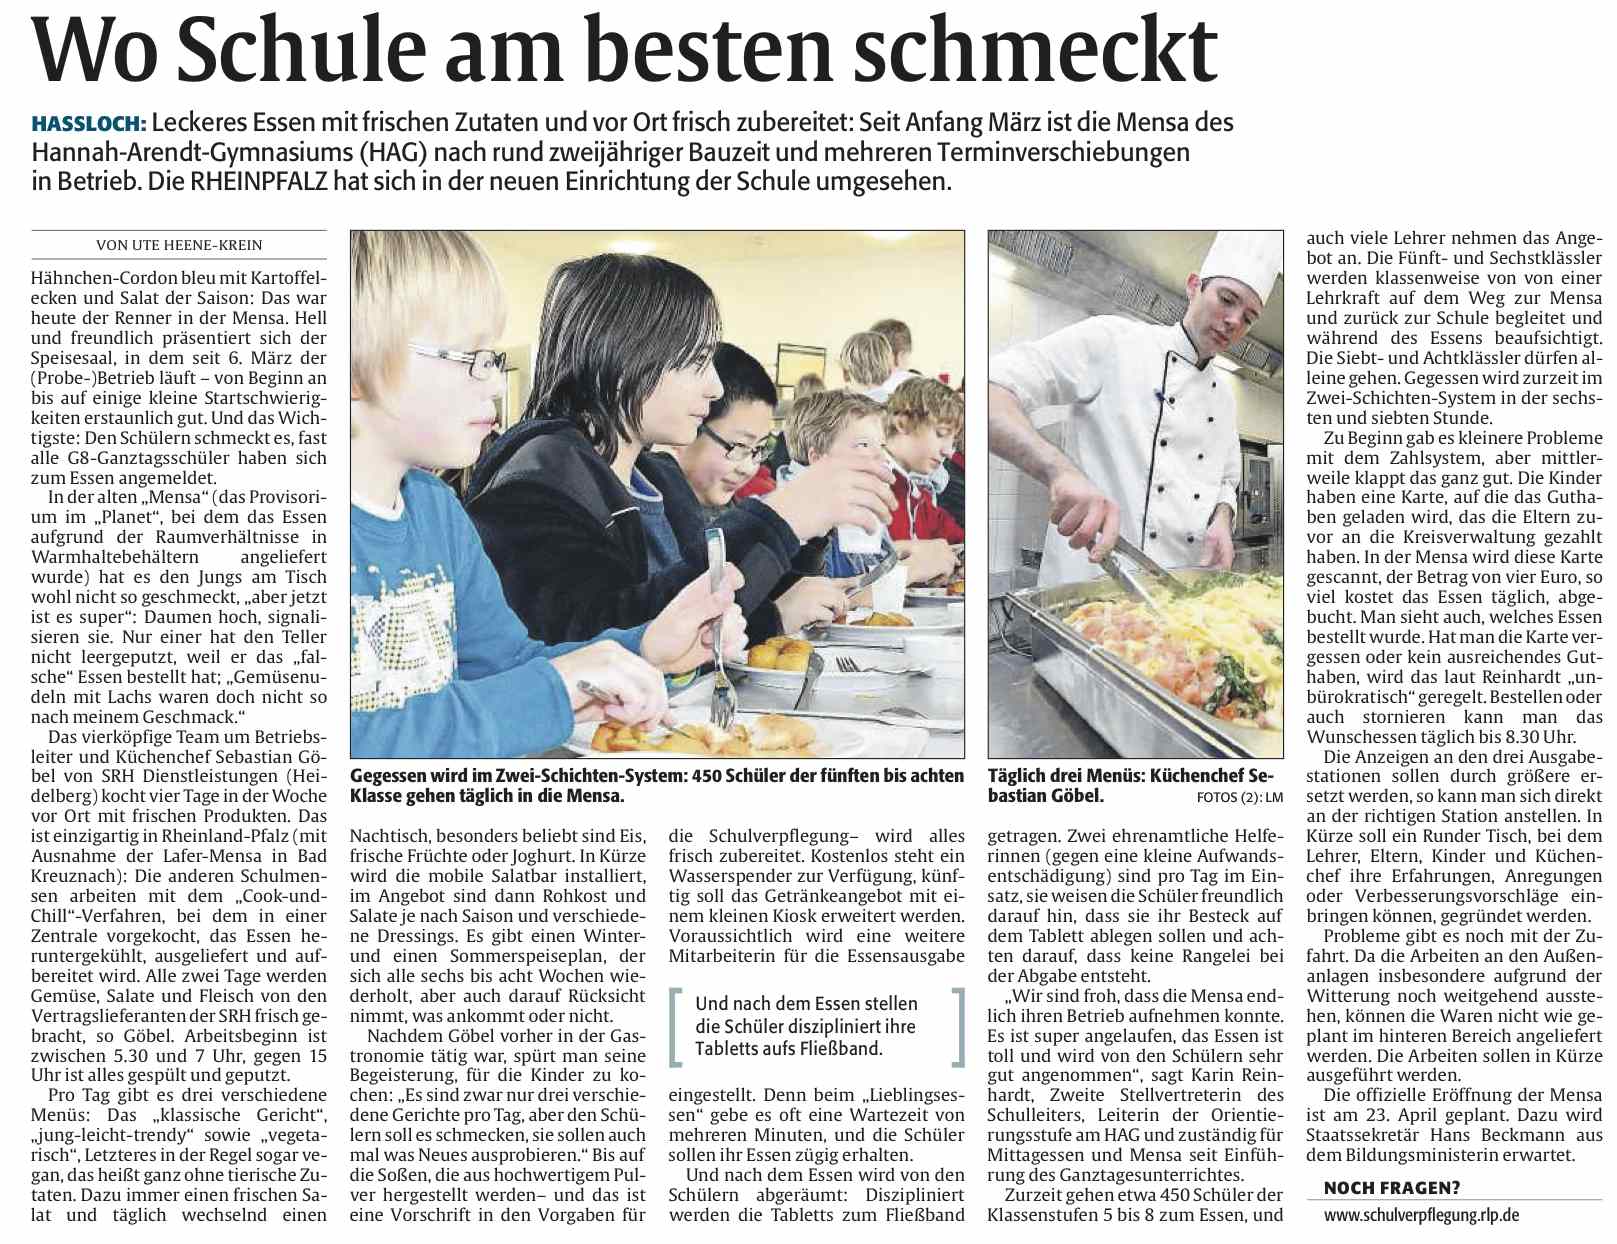 Die Rheinpfalz vom 16. April 2013 - Wo Schule am besten schmeckt